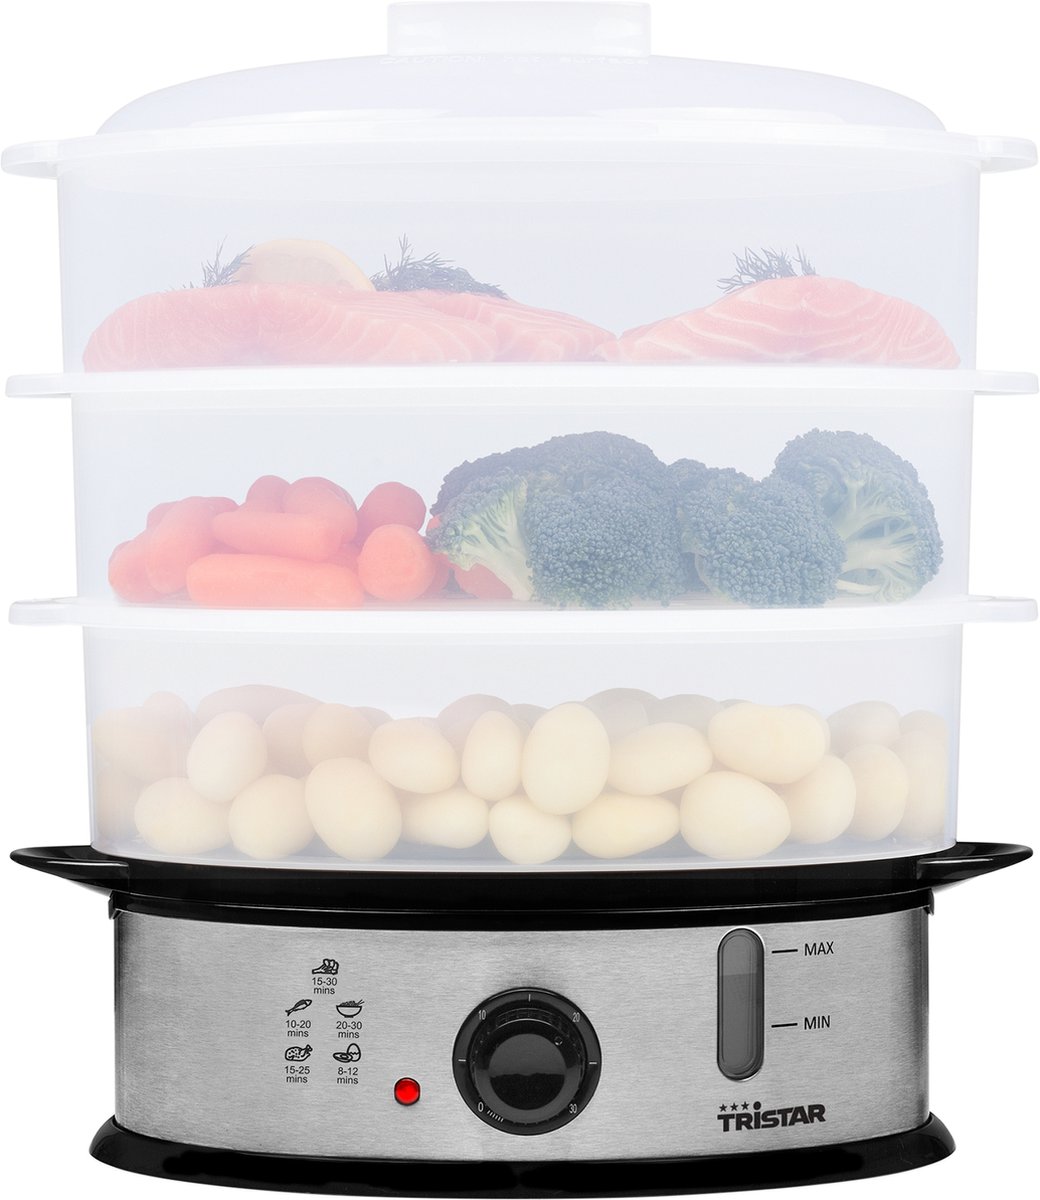 Tristar Stoomkoker VS-3914 Steam Cooker voor o.a. vlees vis groenten aardappelen en rijst Voedselstomer 3 lagen BPA vrij 11 liter 1200 Watt Vaatwasserbestendige onderdelen RVS